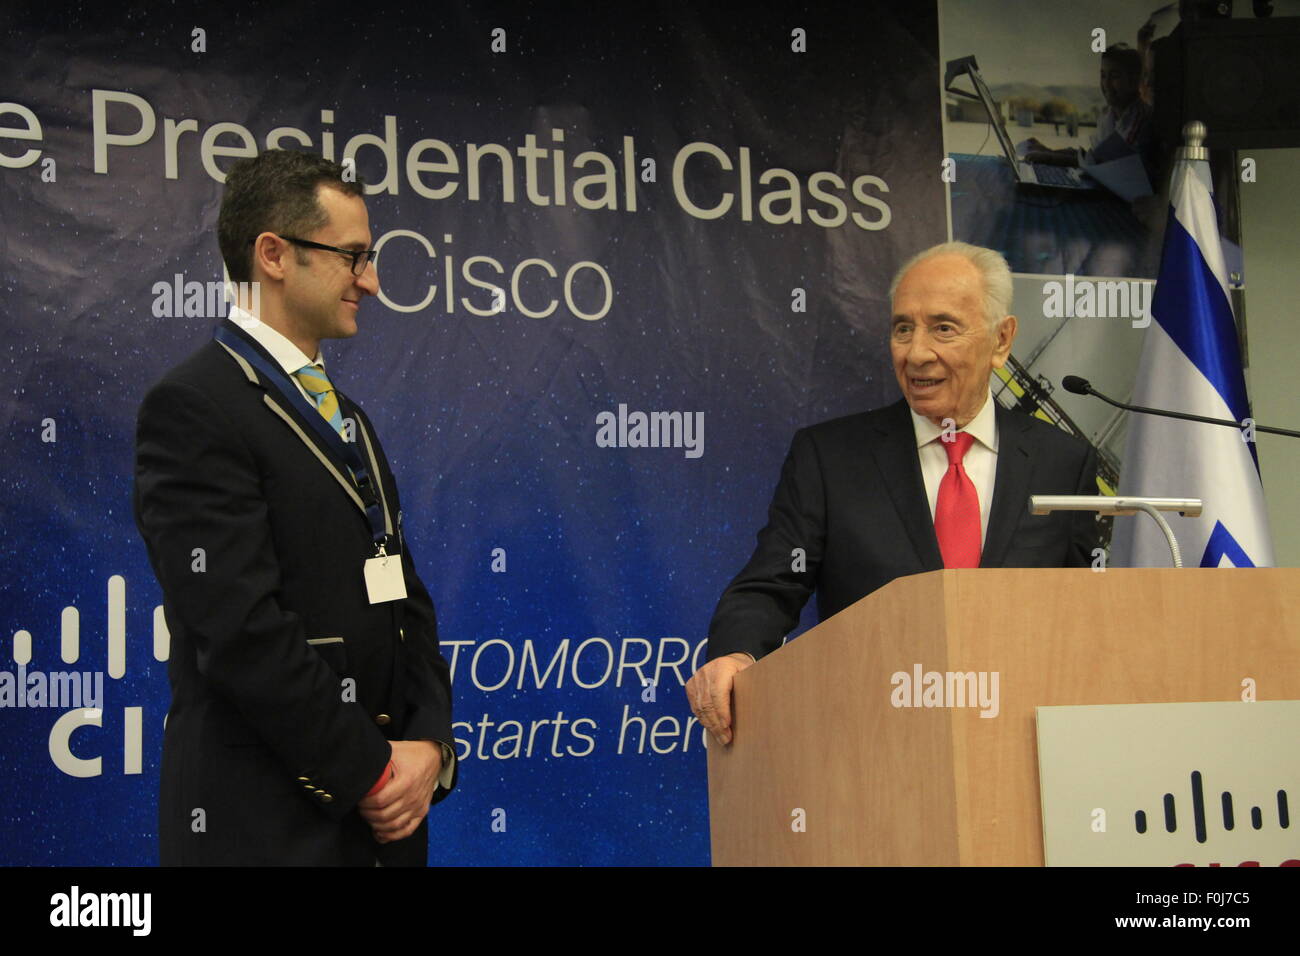 Il Presidente Peres riceve il Guinness World Record Titolare carta dal Vice Presidente Senior di Guinness World Record, Marco Frigatti Foto Stock